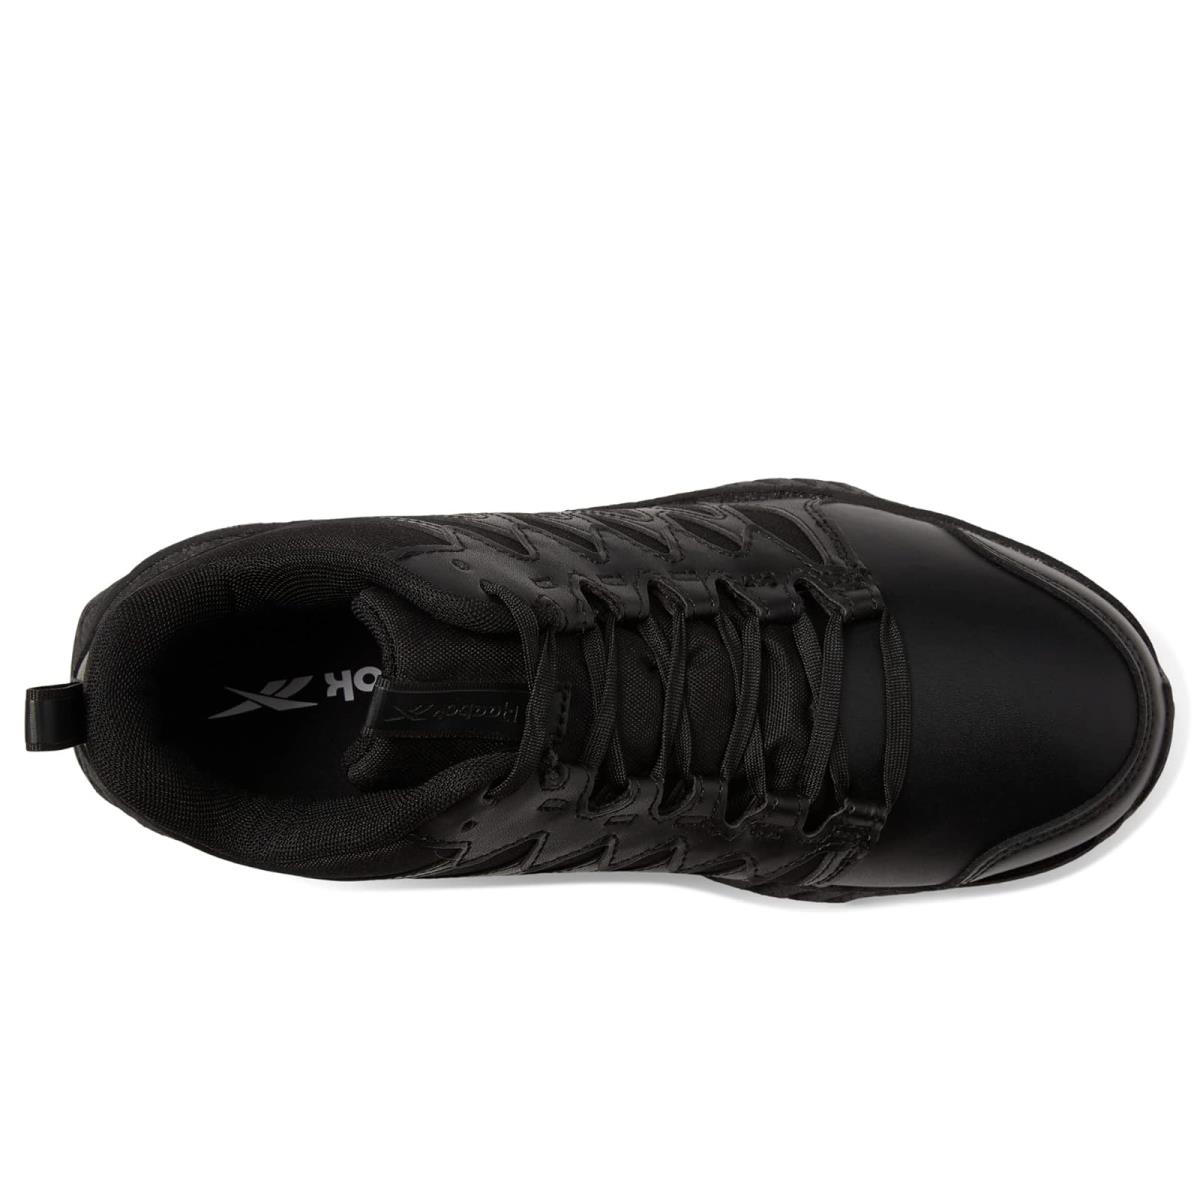 Reebok shoes  - Black 3 0